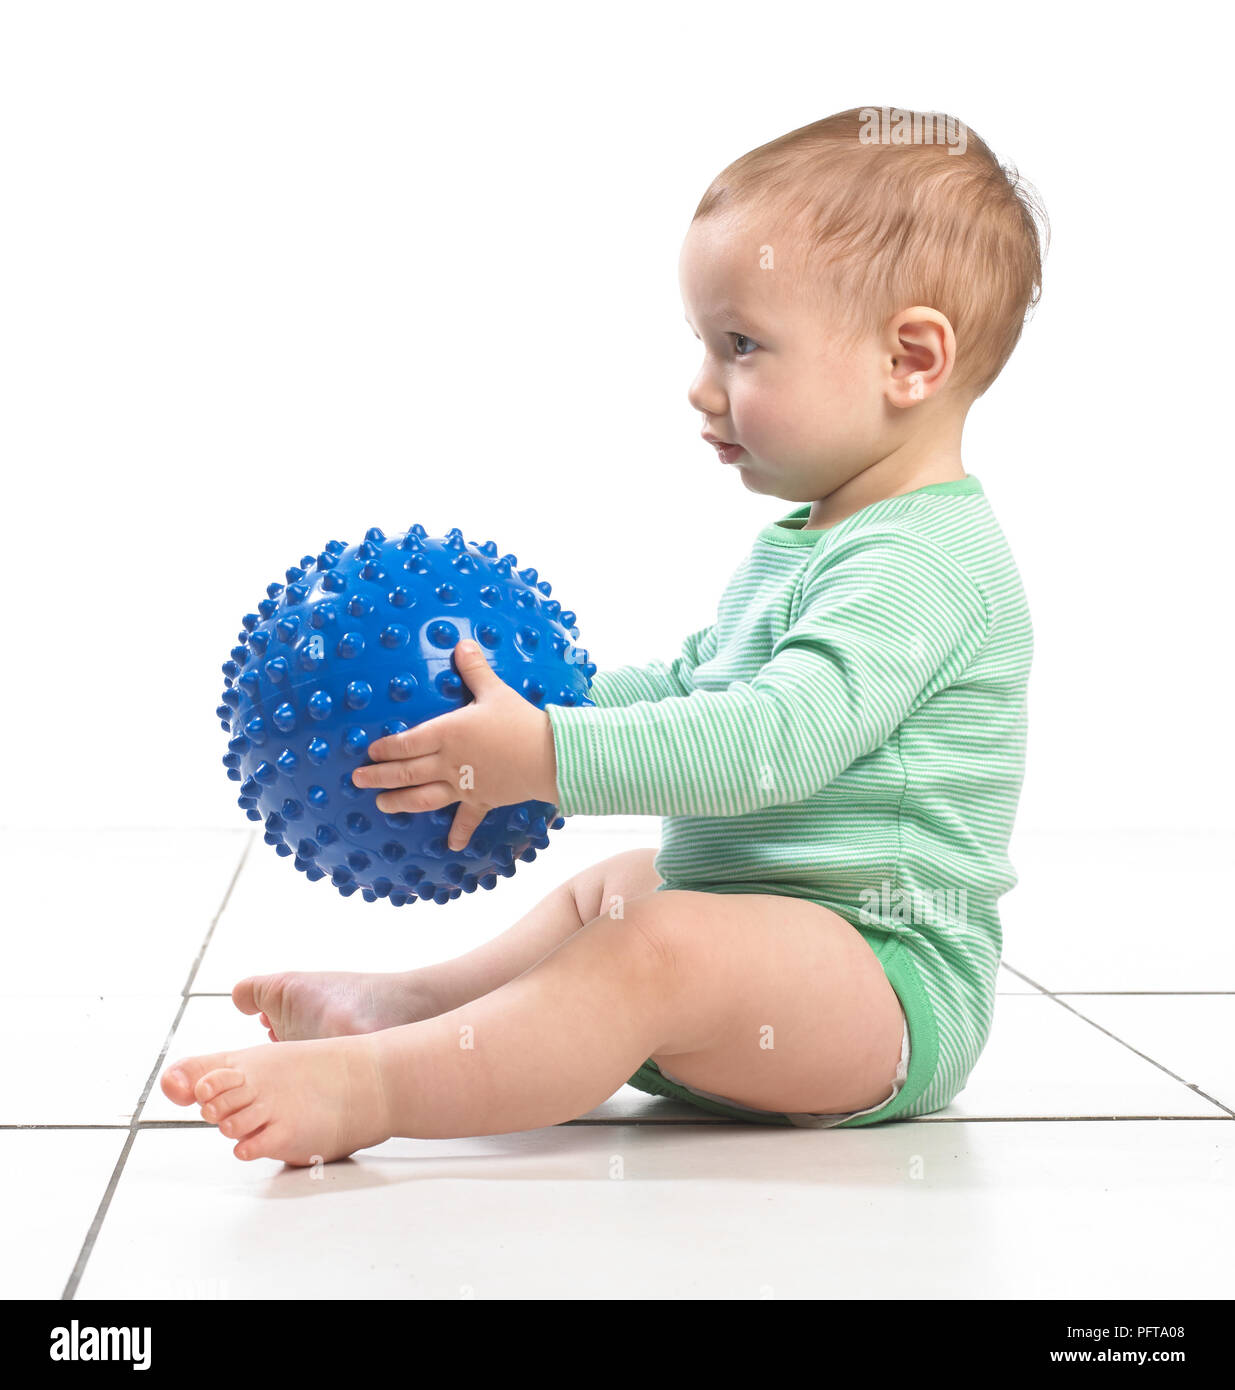 Baby Boy (12,5 mois) assis tenant un jouet balle bosselée Banque D'Images